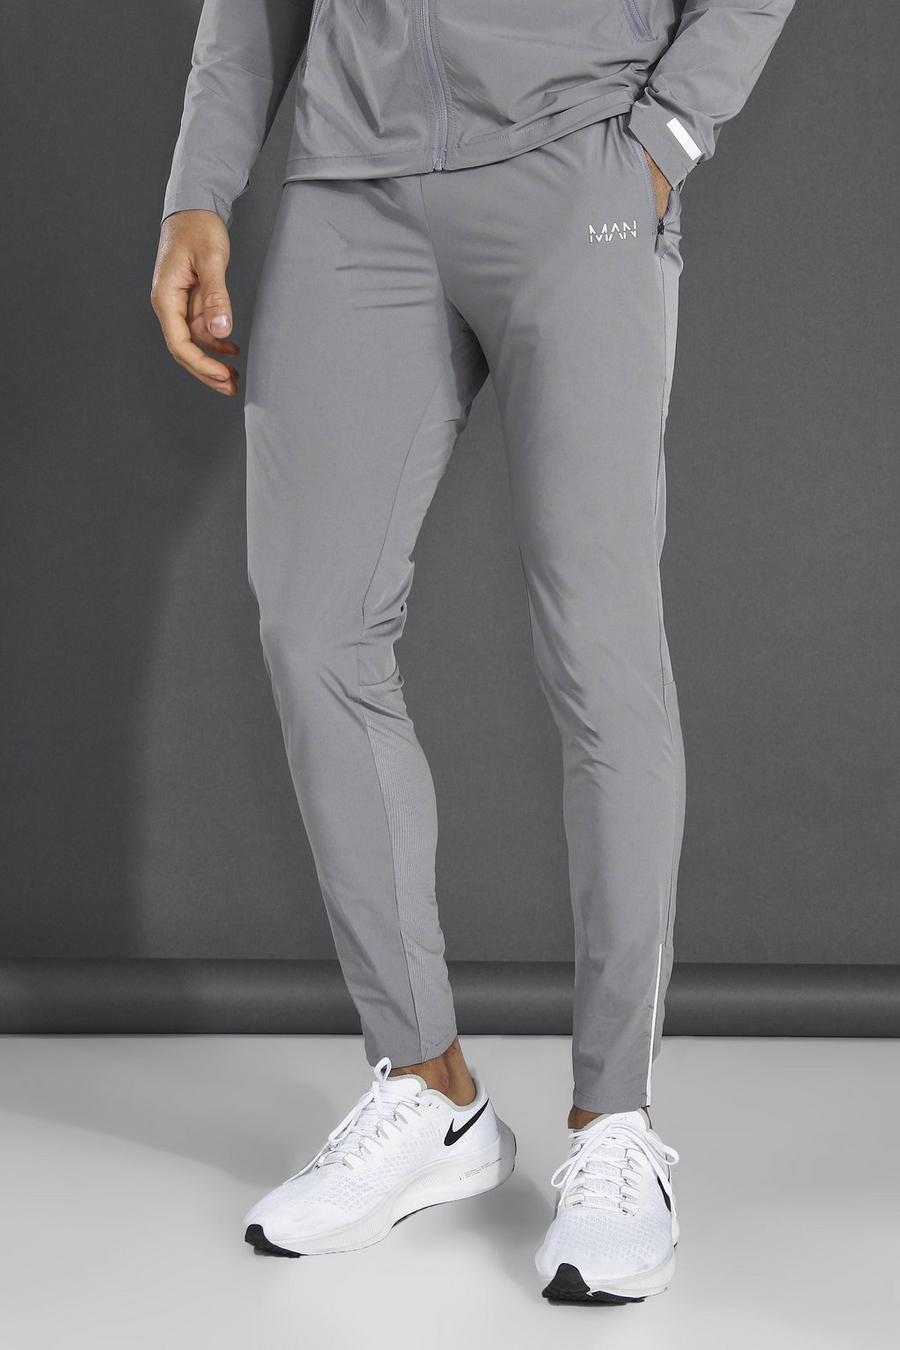 אפור grey מכנסי טרנינג ספורטיביים קלילים חלקים עם כיתוב Man